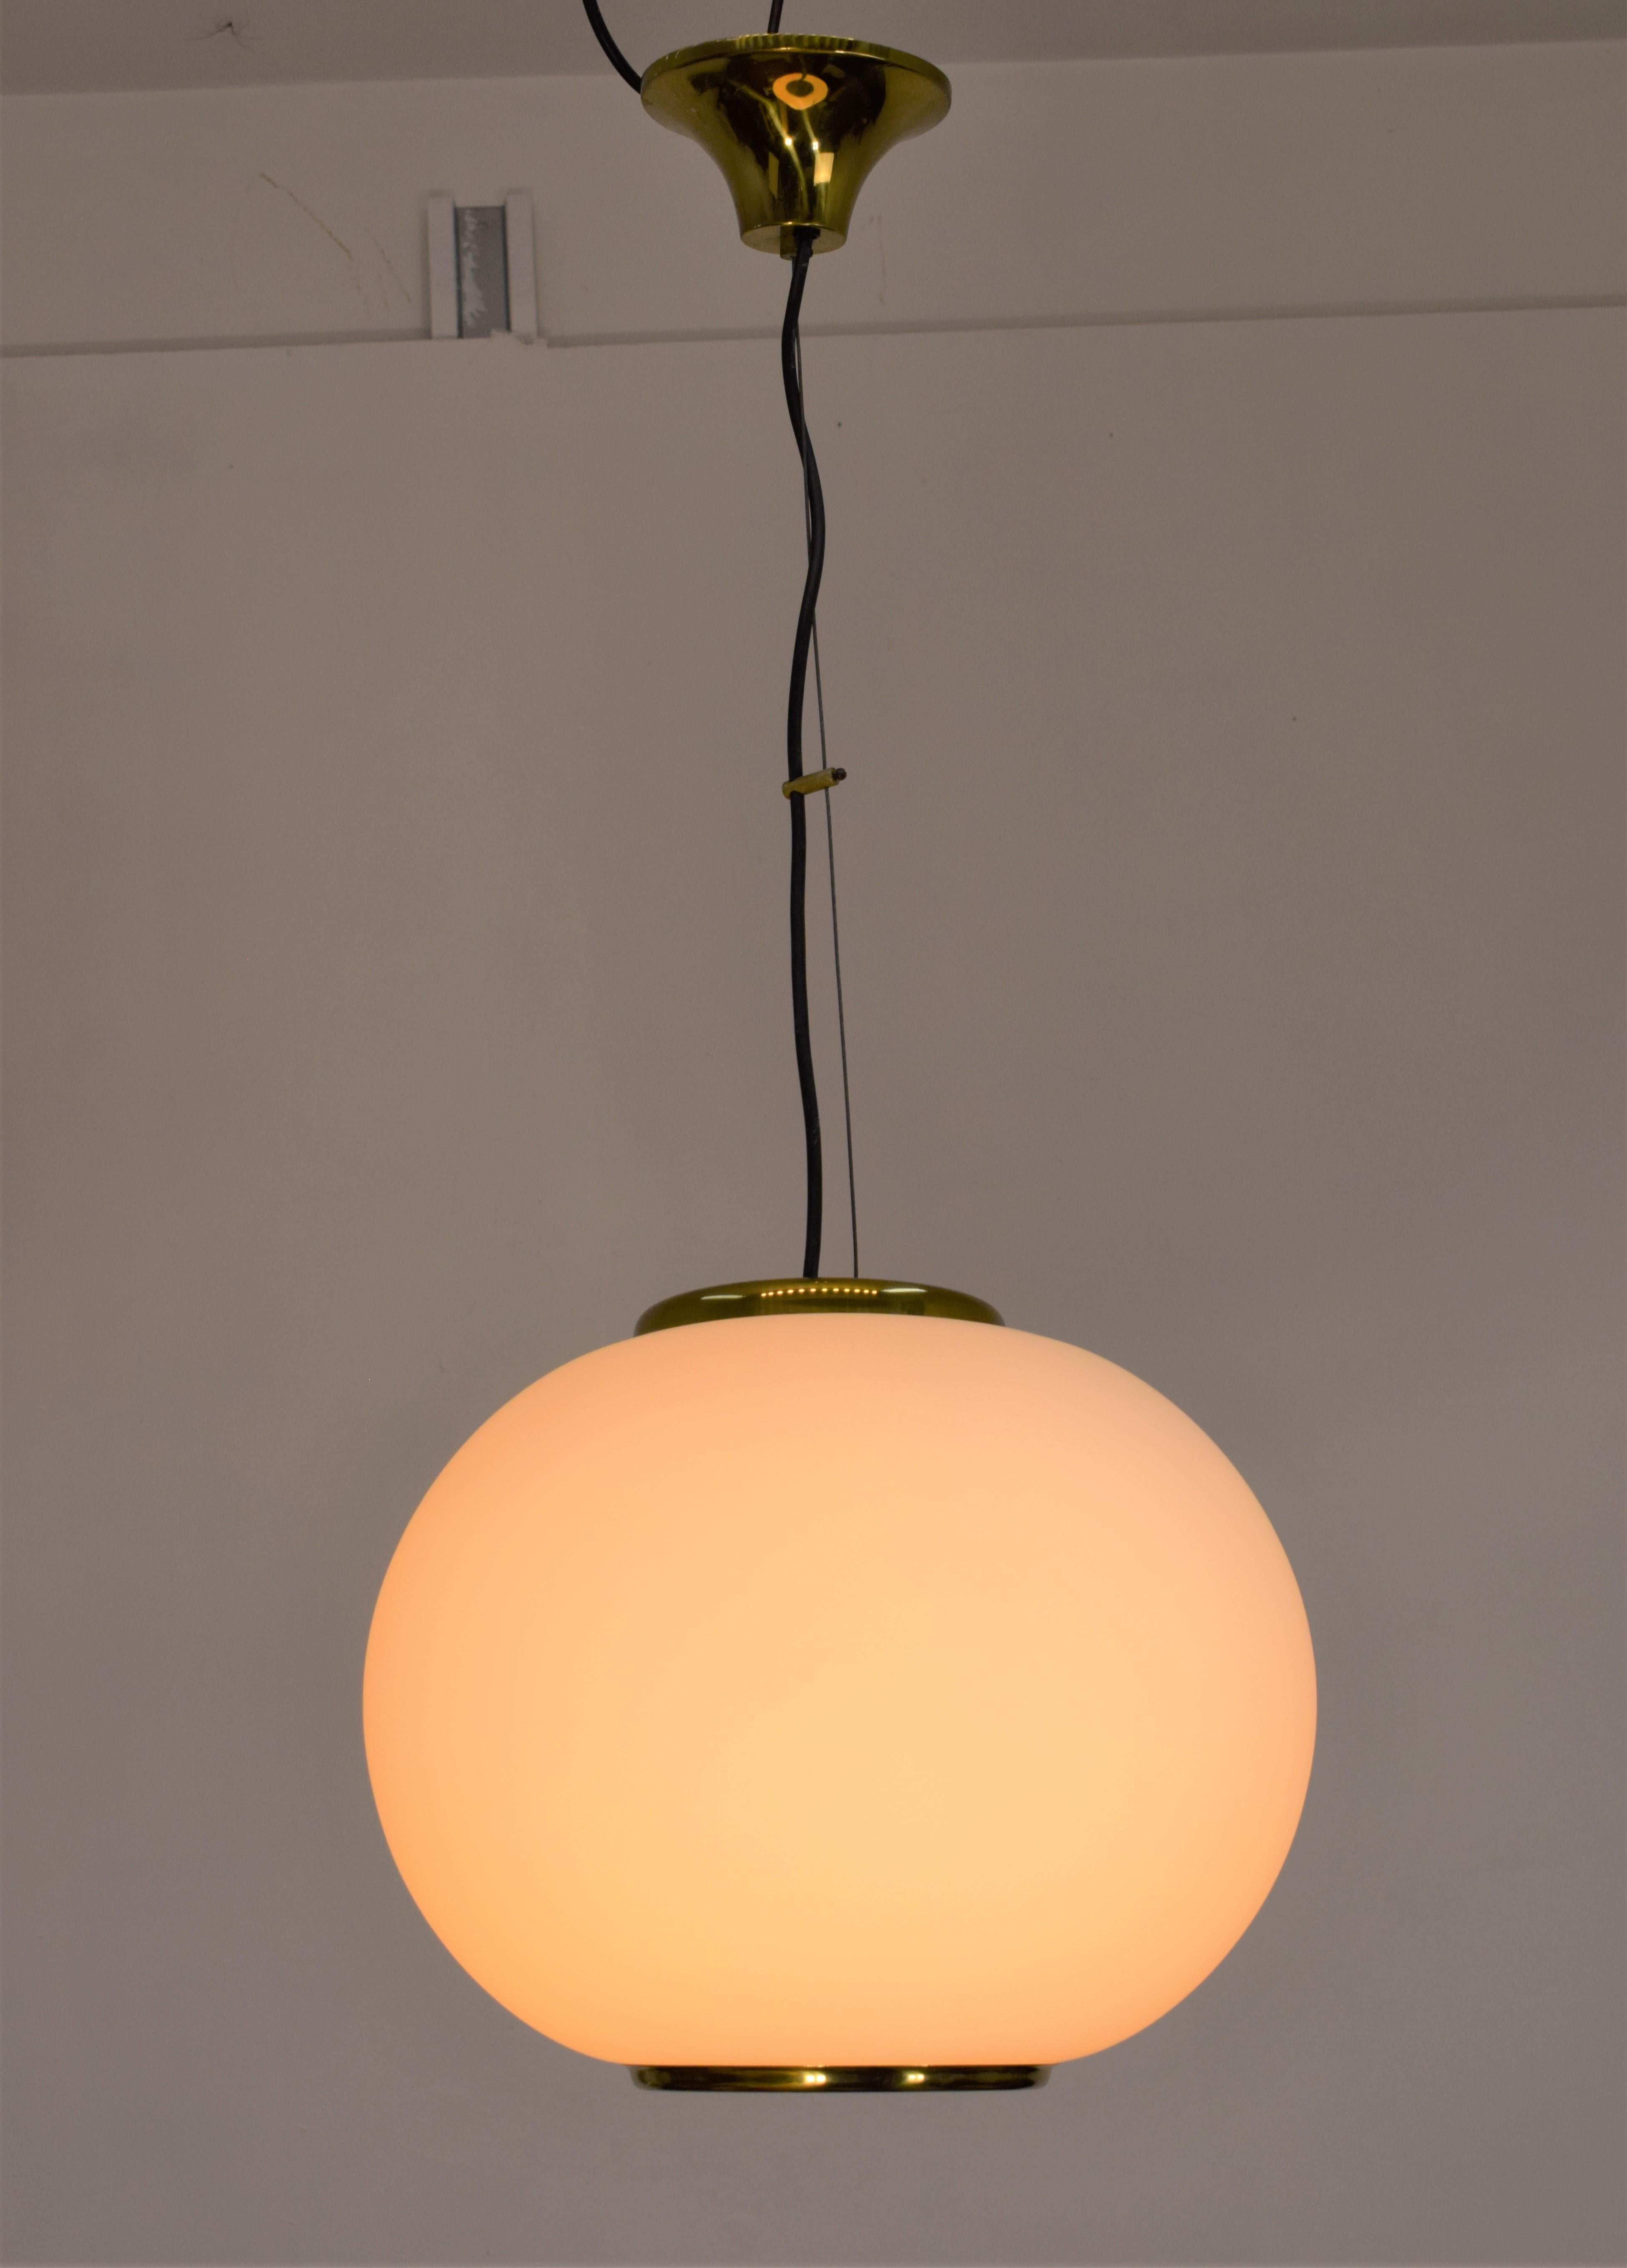 Lampe pendante italienne, années 1960.

Dimensions : H= 85 cm ; D= 36 cm.